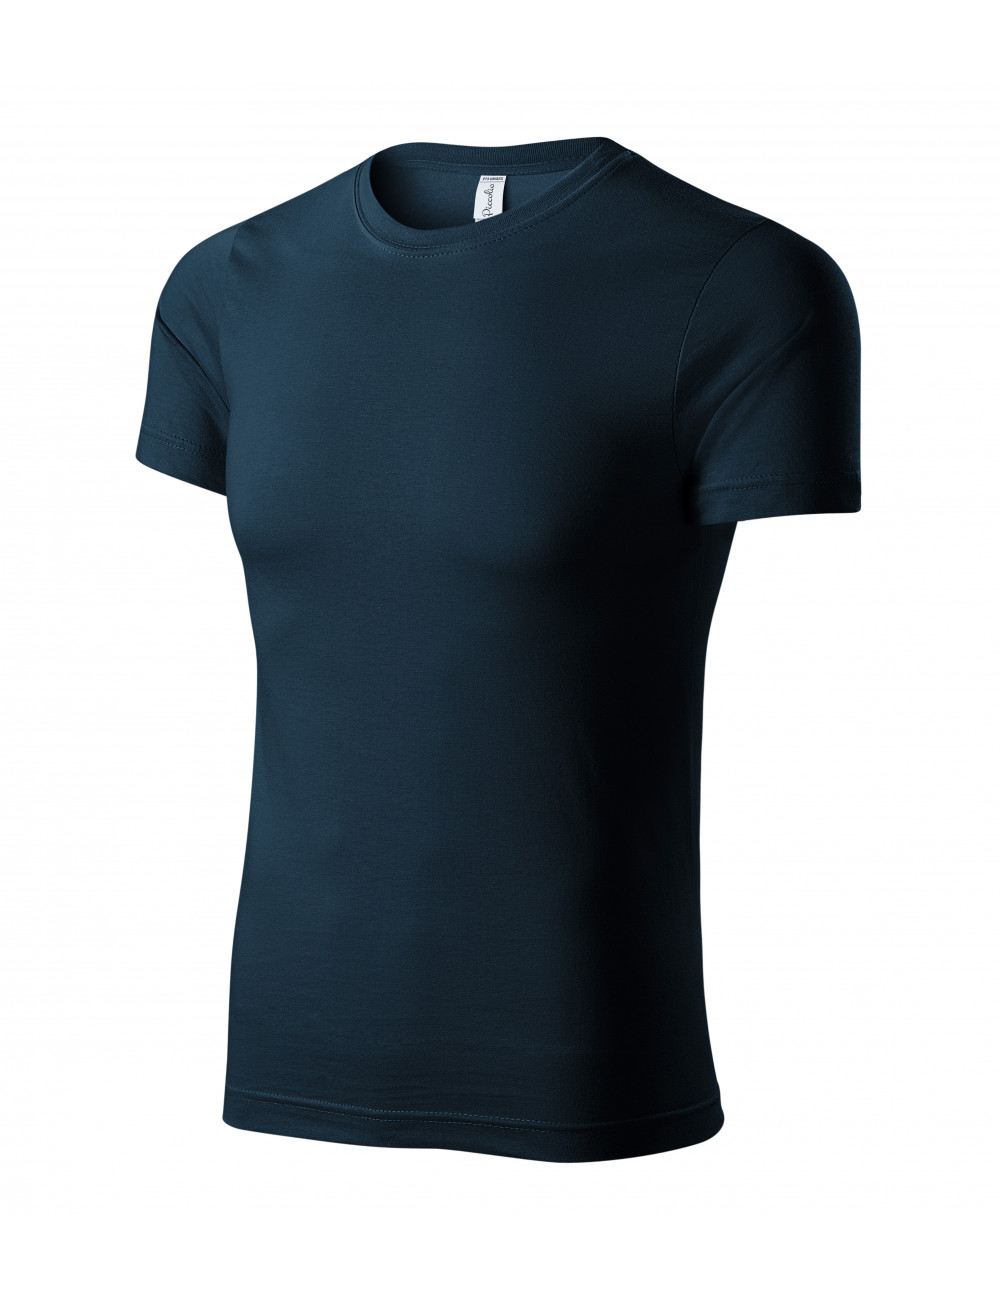 Unisex t-shirt paint p73 navy blue Adler Piccolio